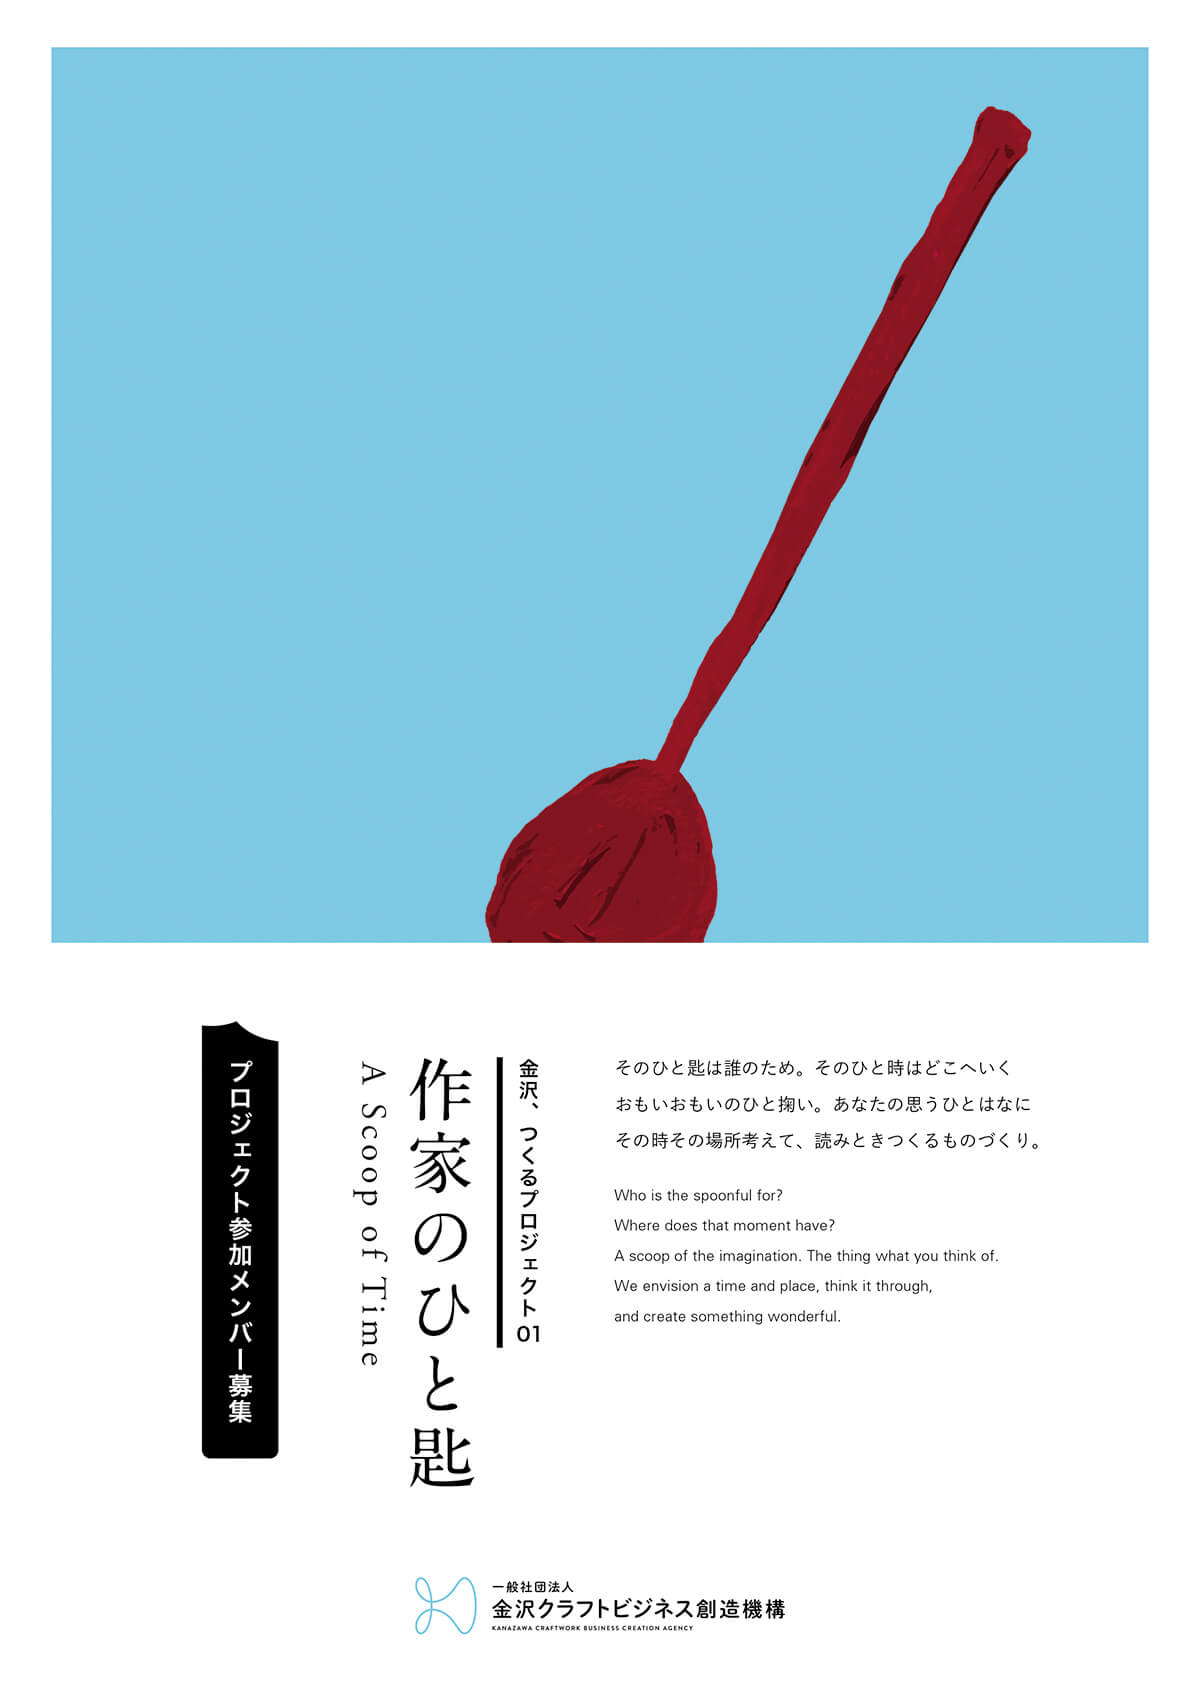 金沢、つくるプロジェクト01「作家のひと匙」<br>参加者募集